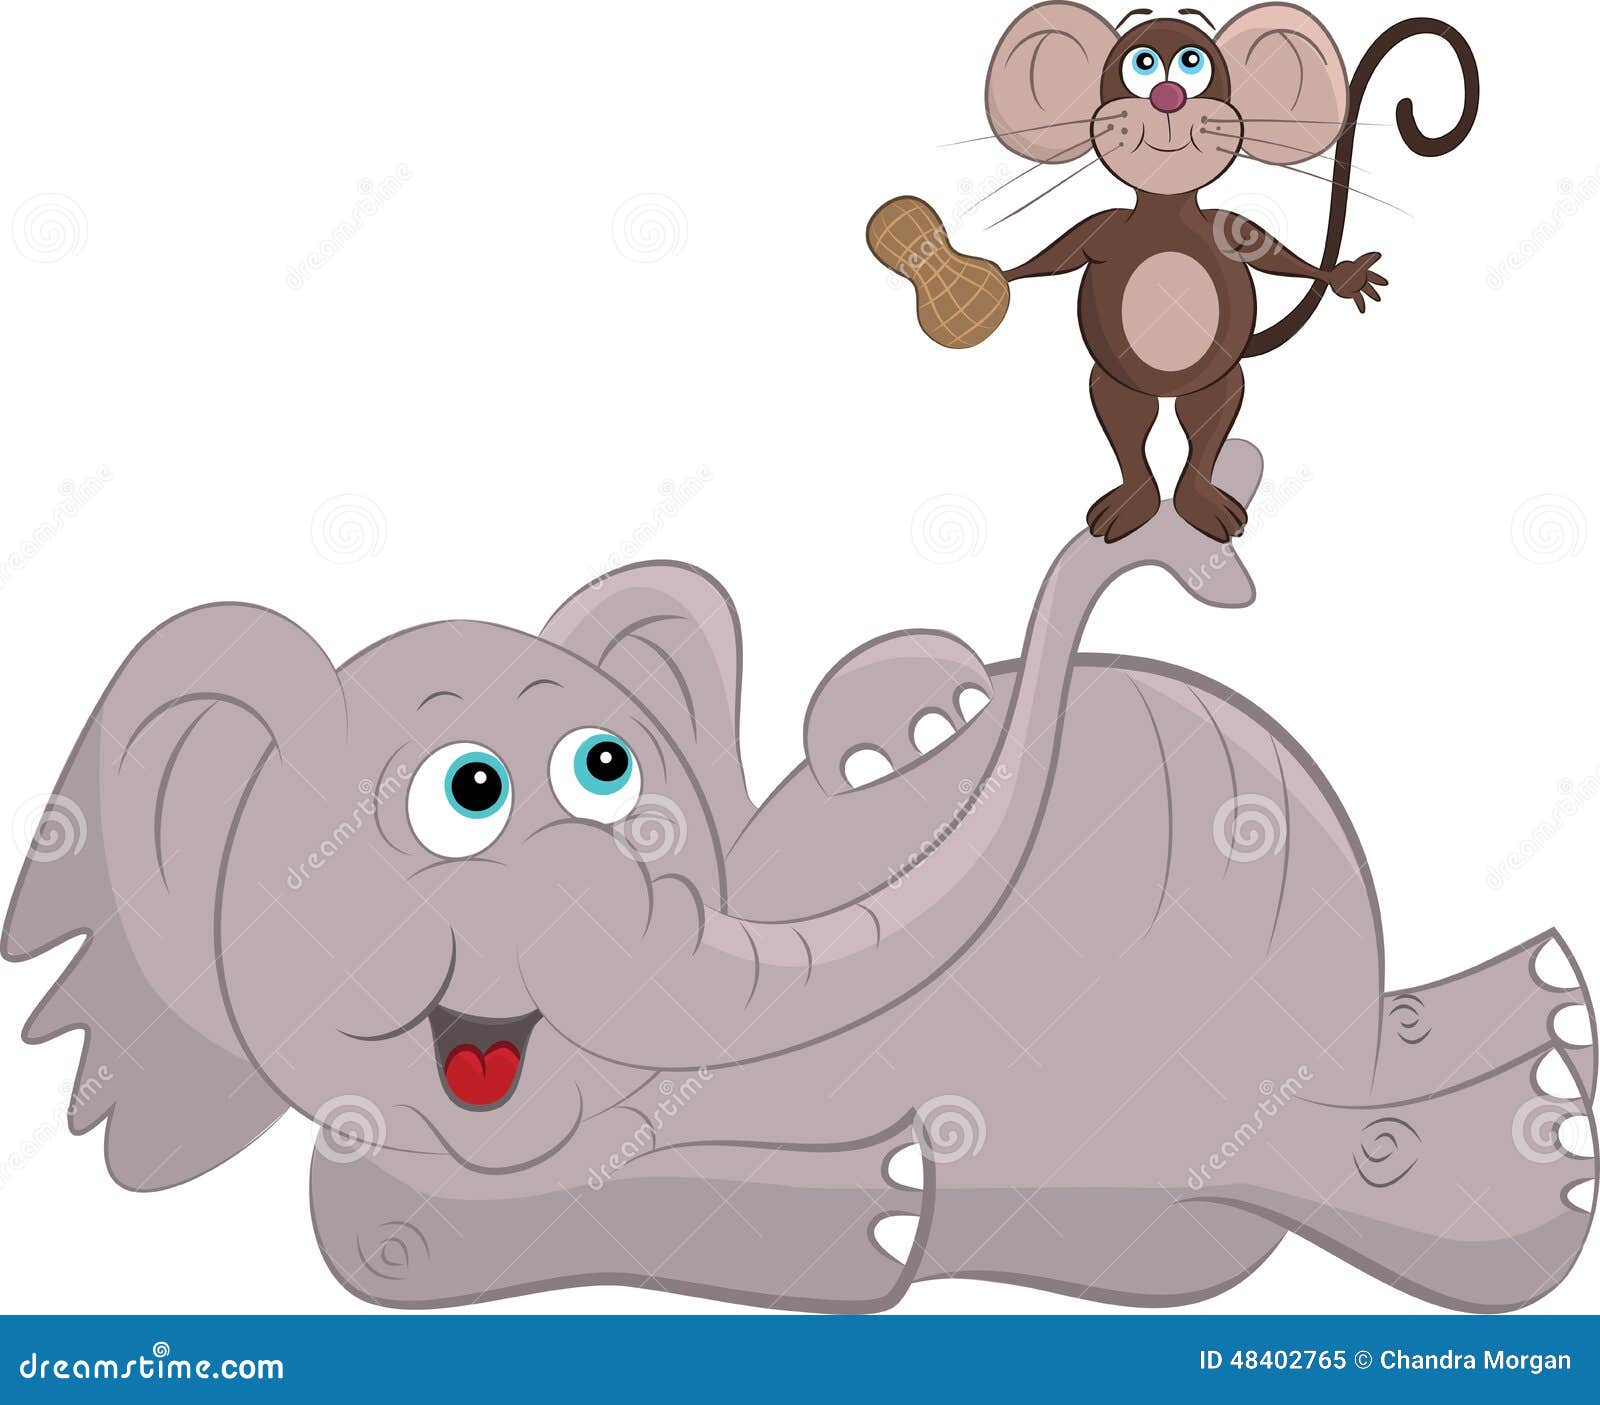 Слон и мышка: Анекдот: Слон и мышка идут по пустыне. Мышка: — Ну и…